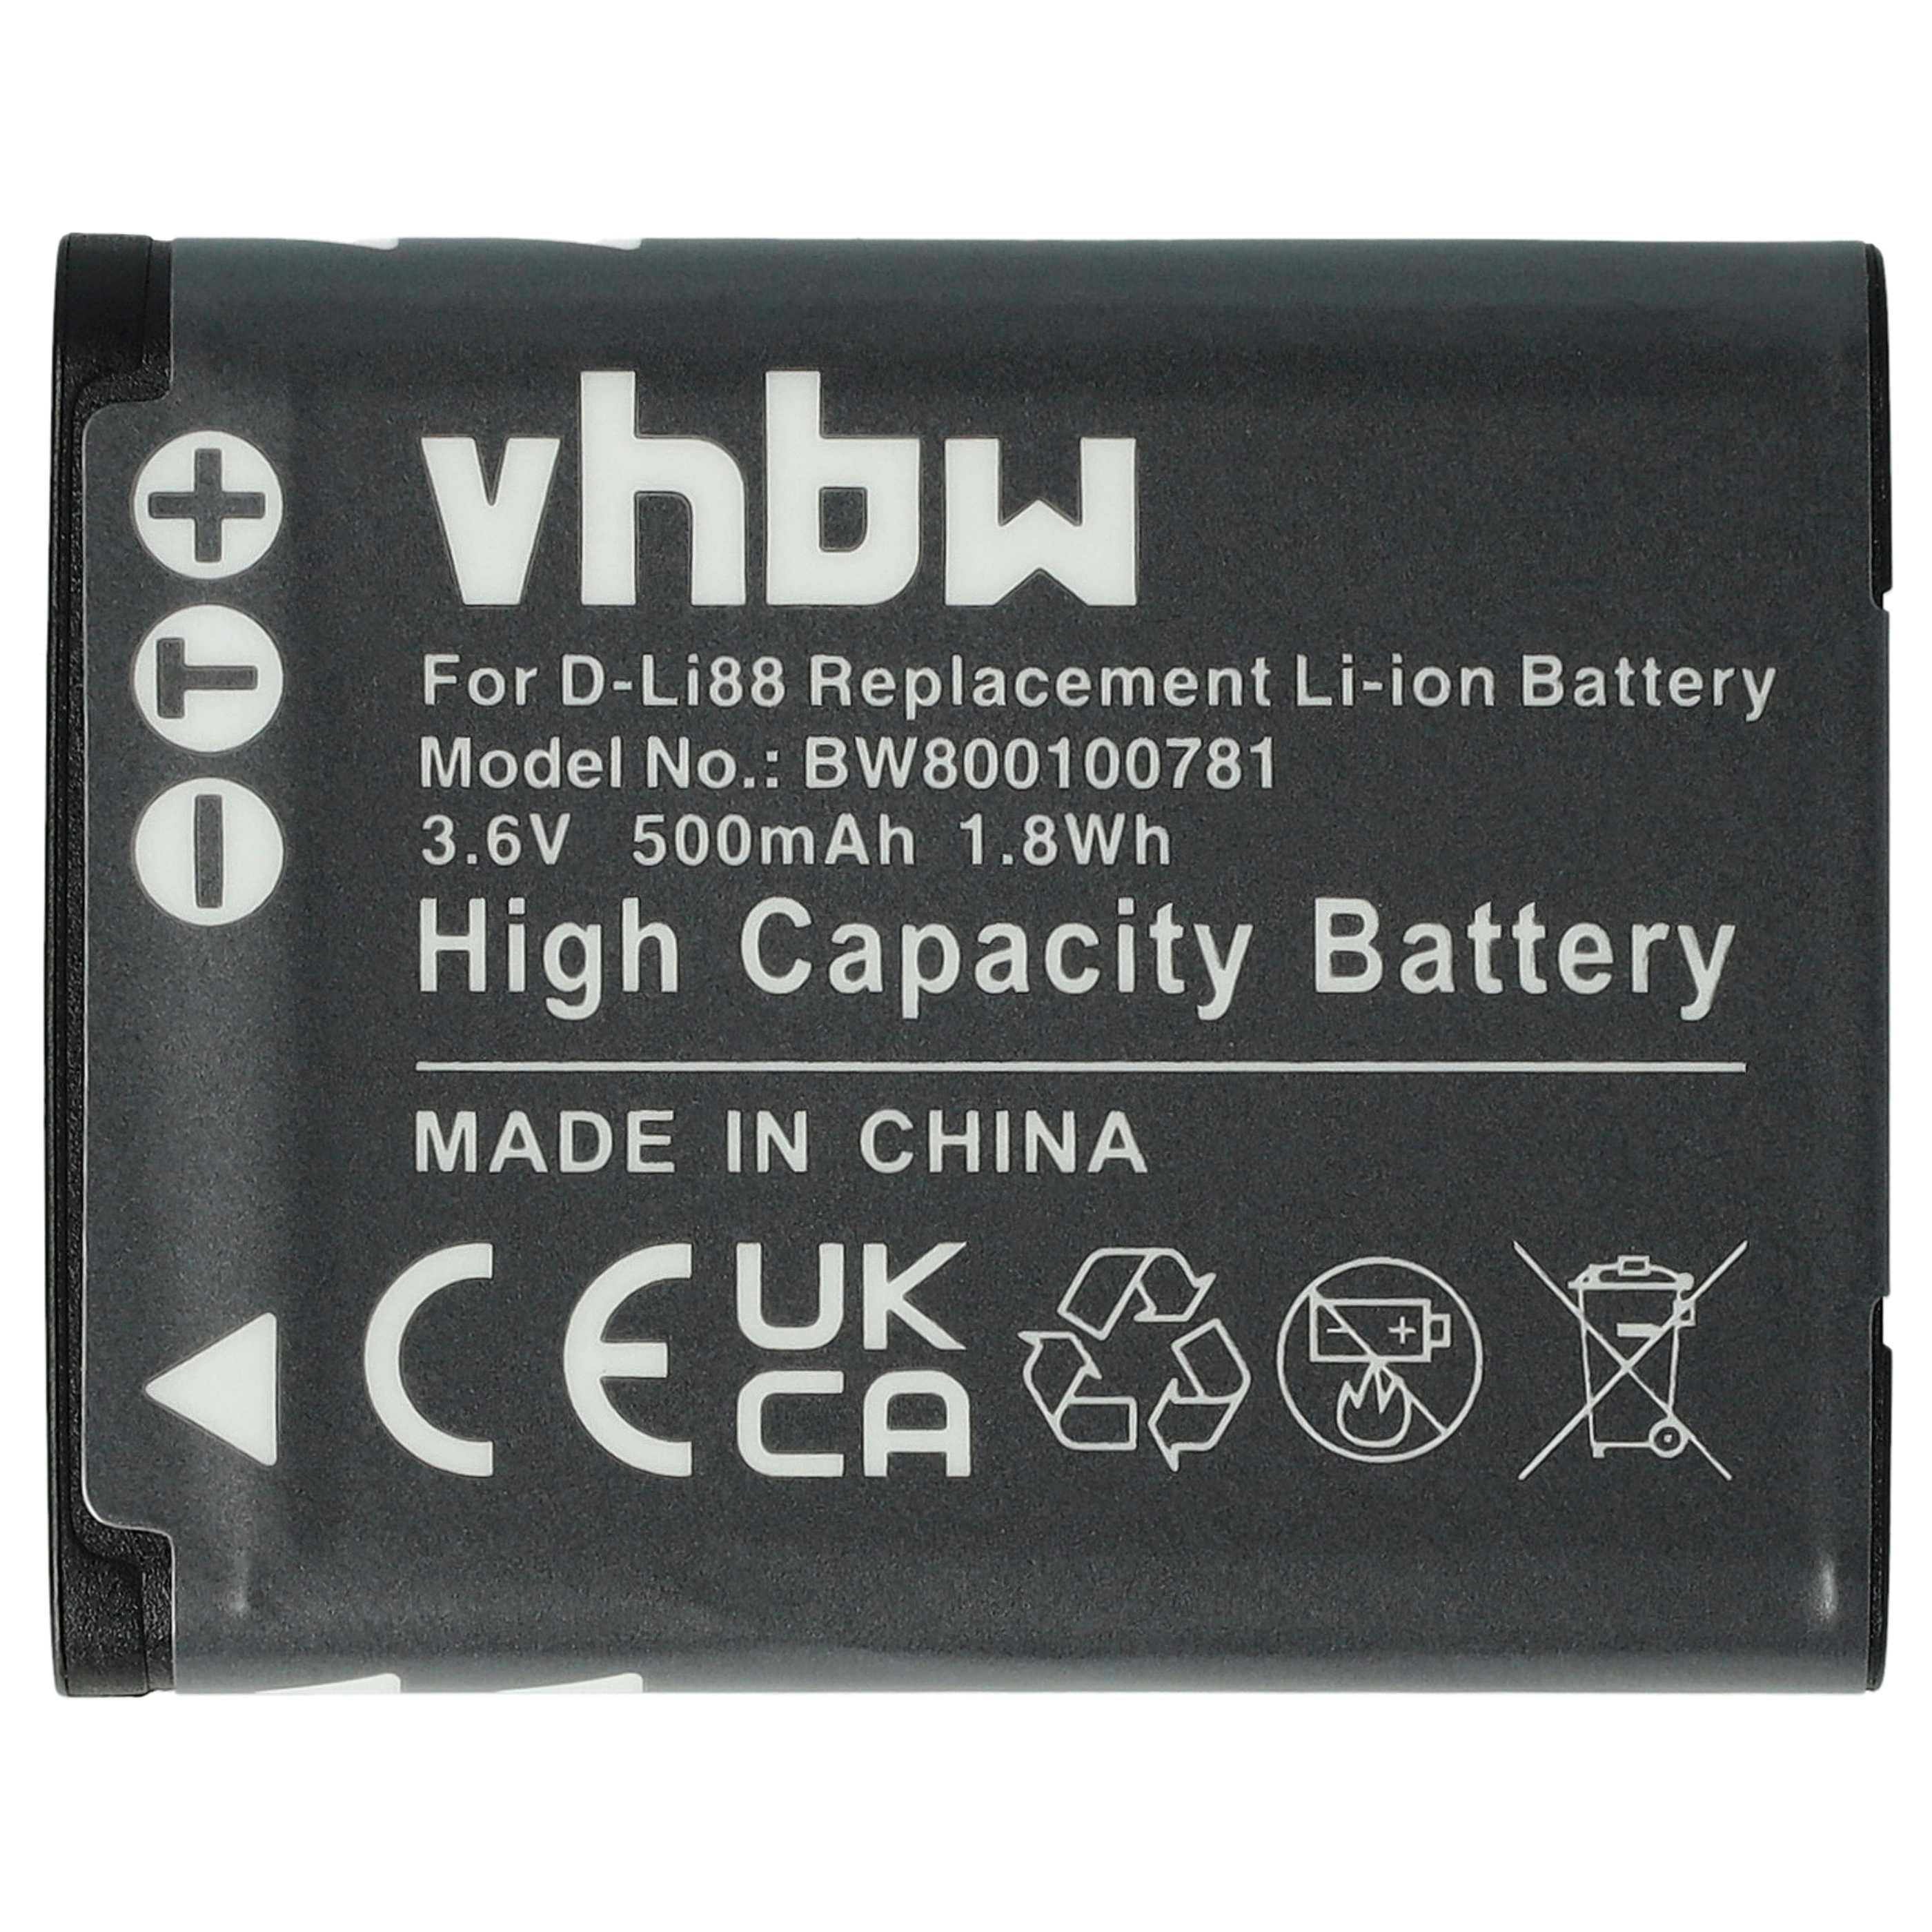 Batterie remplace Panasonic VW-VBX070E, VW-VBX070 pour appareil photo - 500mAh 3,6V Li-ion